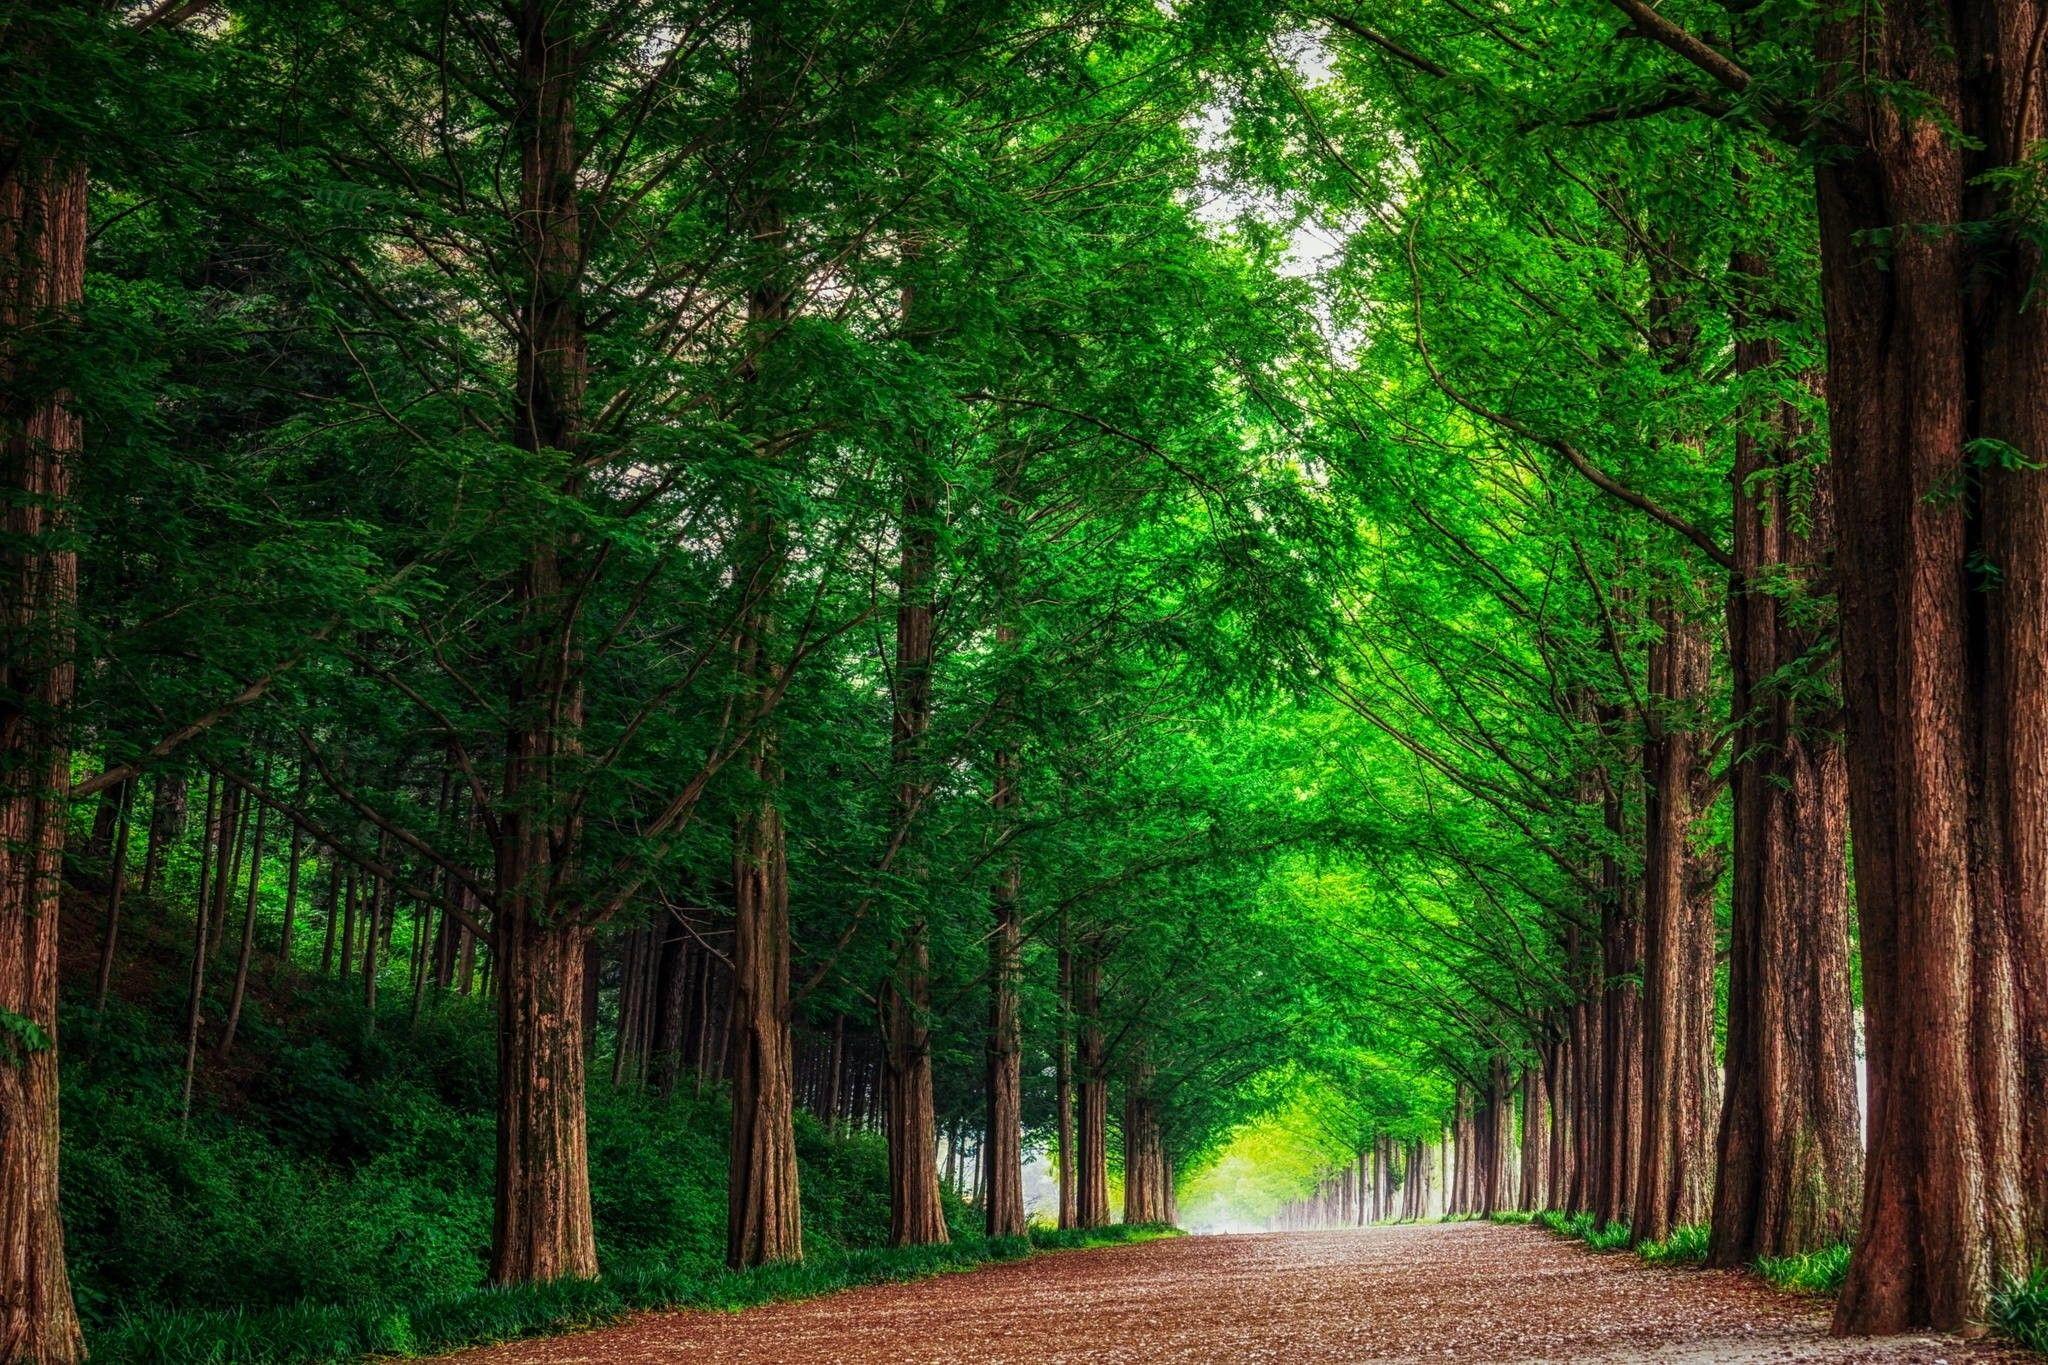 Thiên nhiên Hàn Quốc có một vẻ đẹp riêng biệt, và một hình nền thiên nhiên màu xanh lá cây sẽ mang đến cho bạn sự thư giãn và cảm giác gần gũi với thiên nhiên. Hãy vào xem ngay để cảm nhận được sự hài lòng và sự tươi mới mà màu xanh lá cây này mang lại.